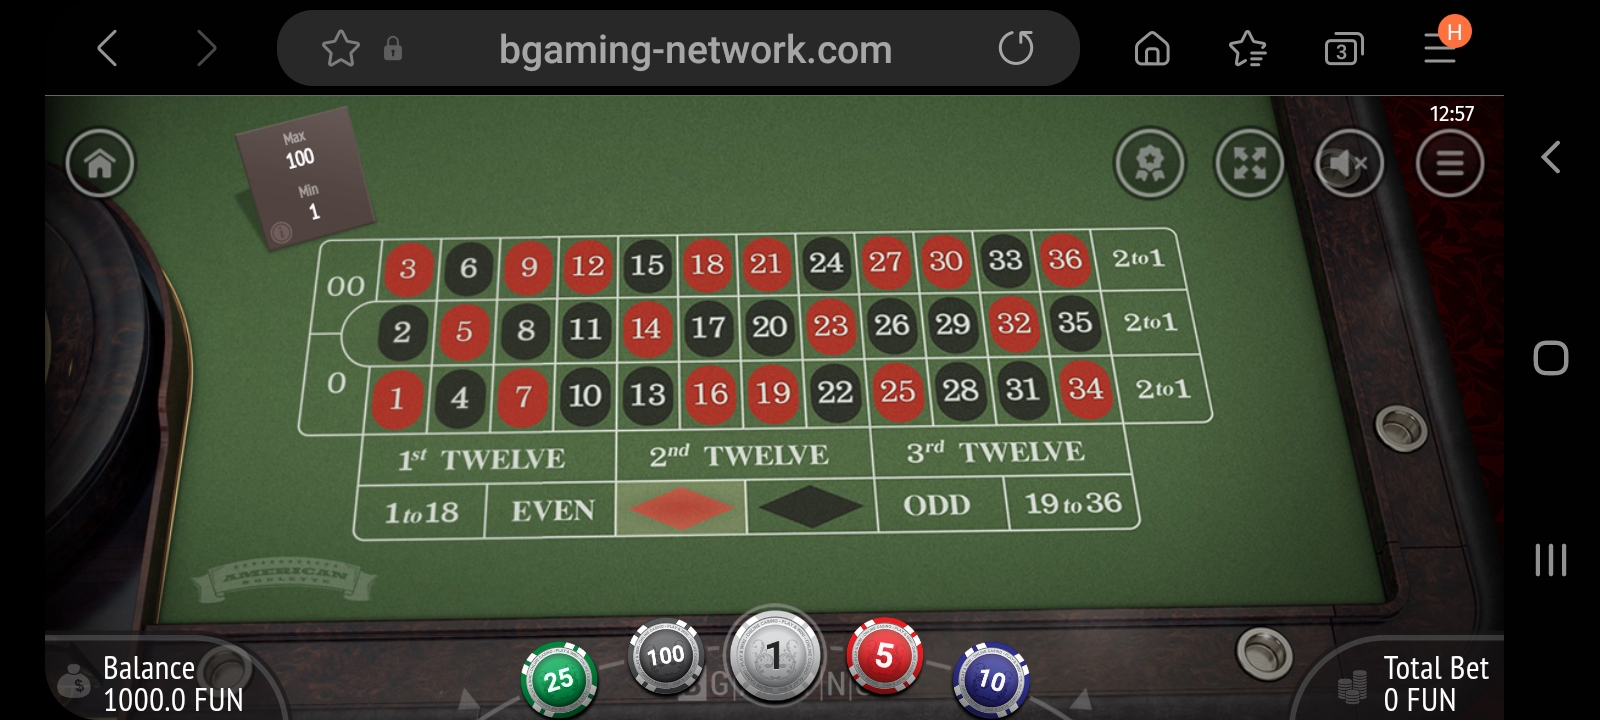 Stake.com casino app screenshot 4